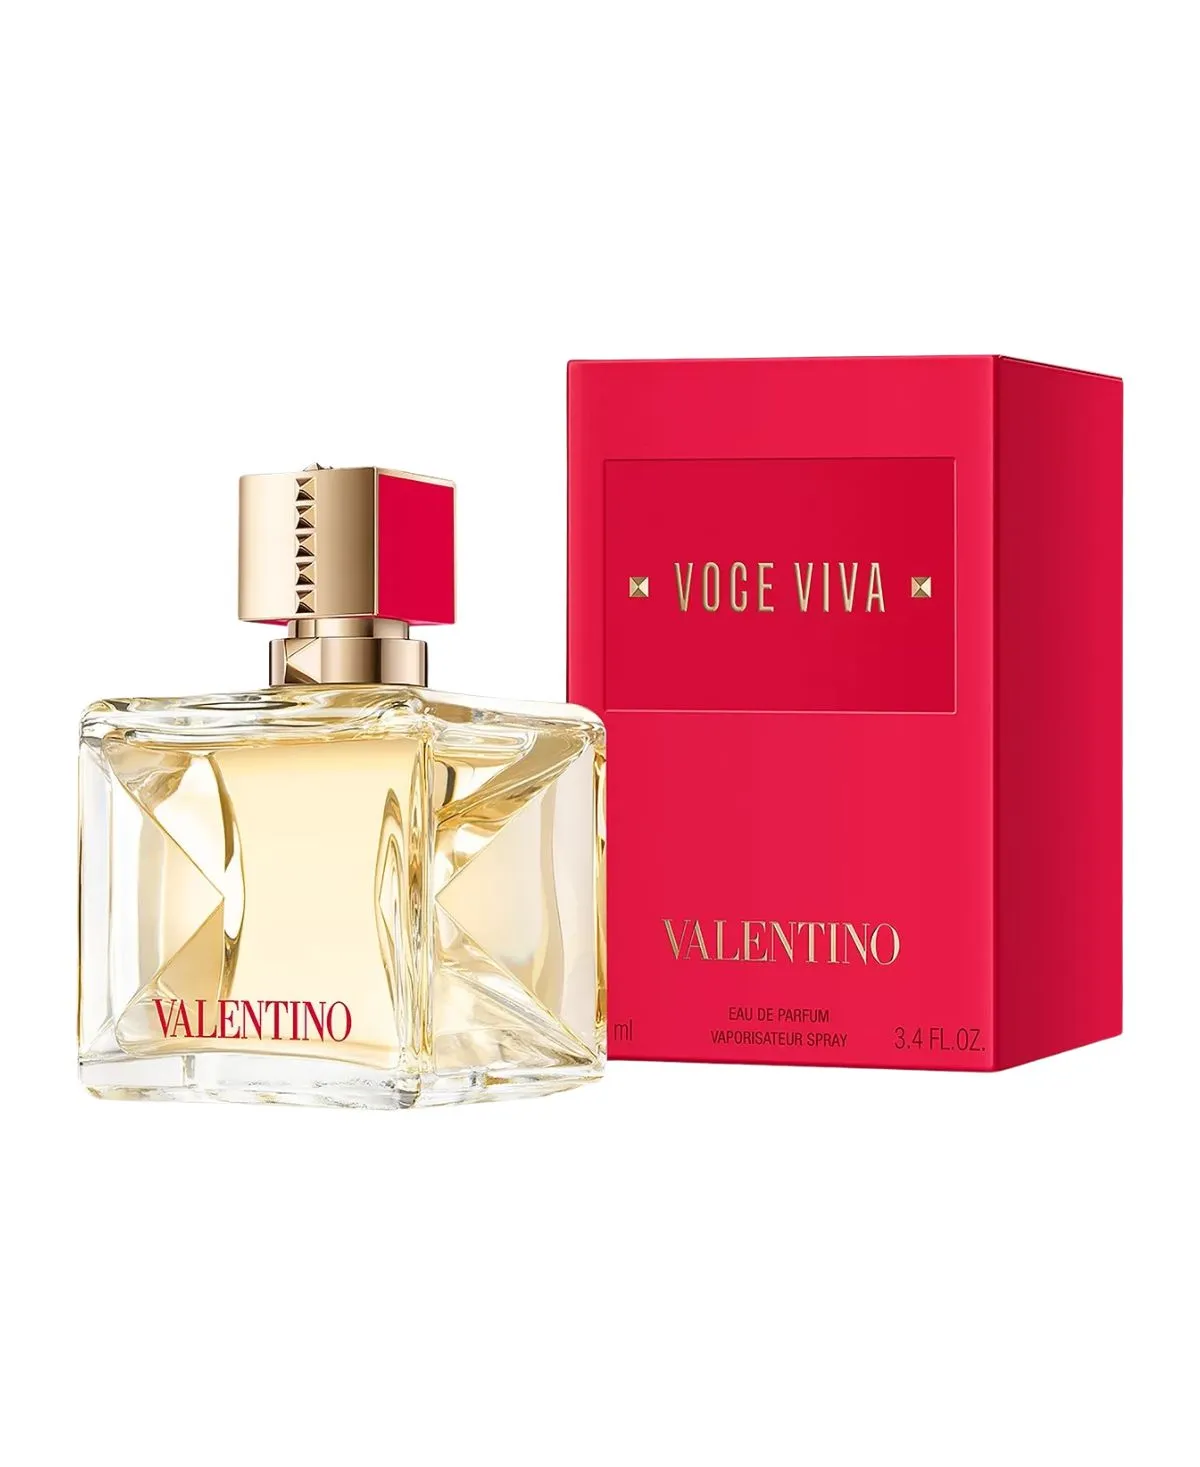 Valentino Voce Viva for Women Eau de Parfum (EDP) Spray 3.4 oz (100 ml) 3614273073899